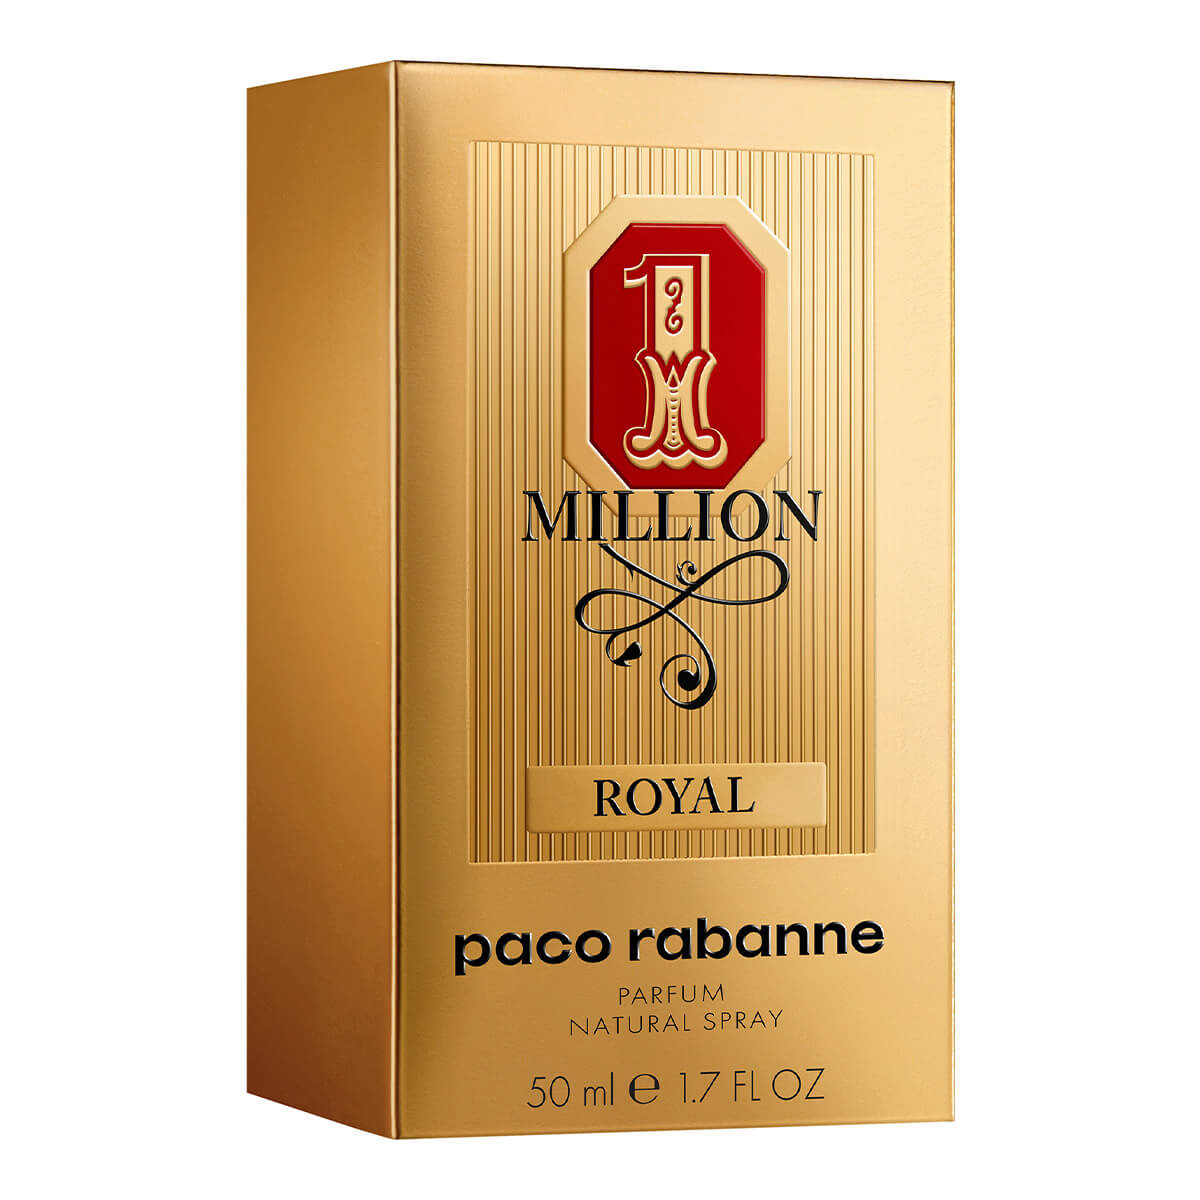 1 MILLION ROYAL EAU DE PARFUM PERFUME PARA HOMBRE